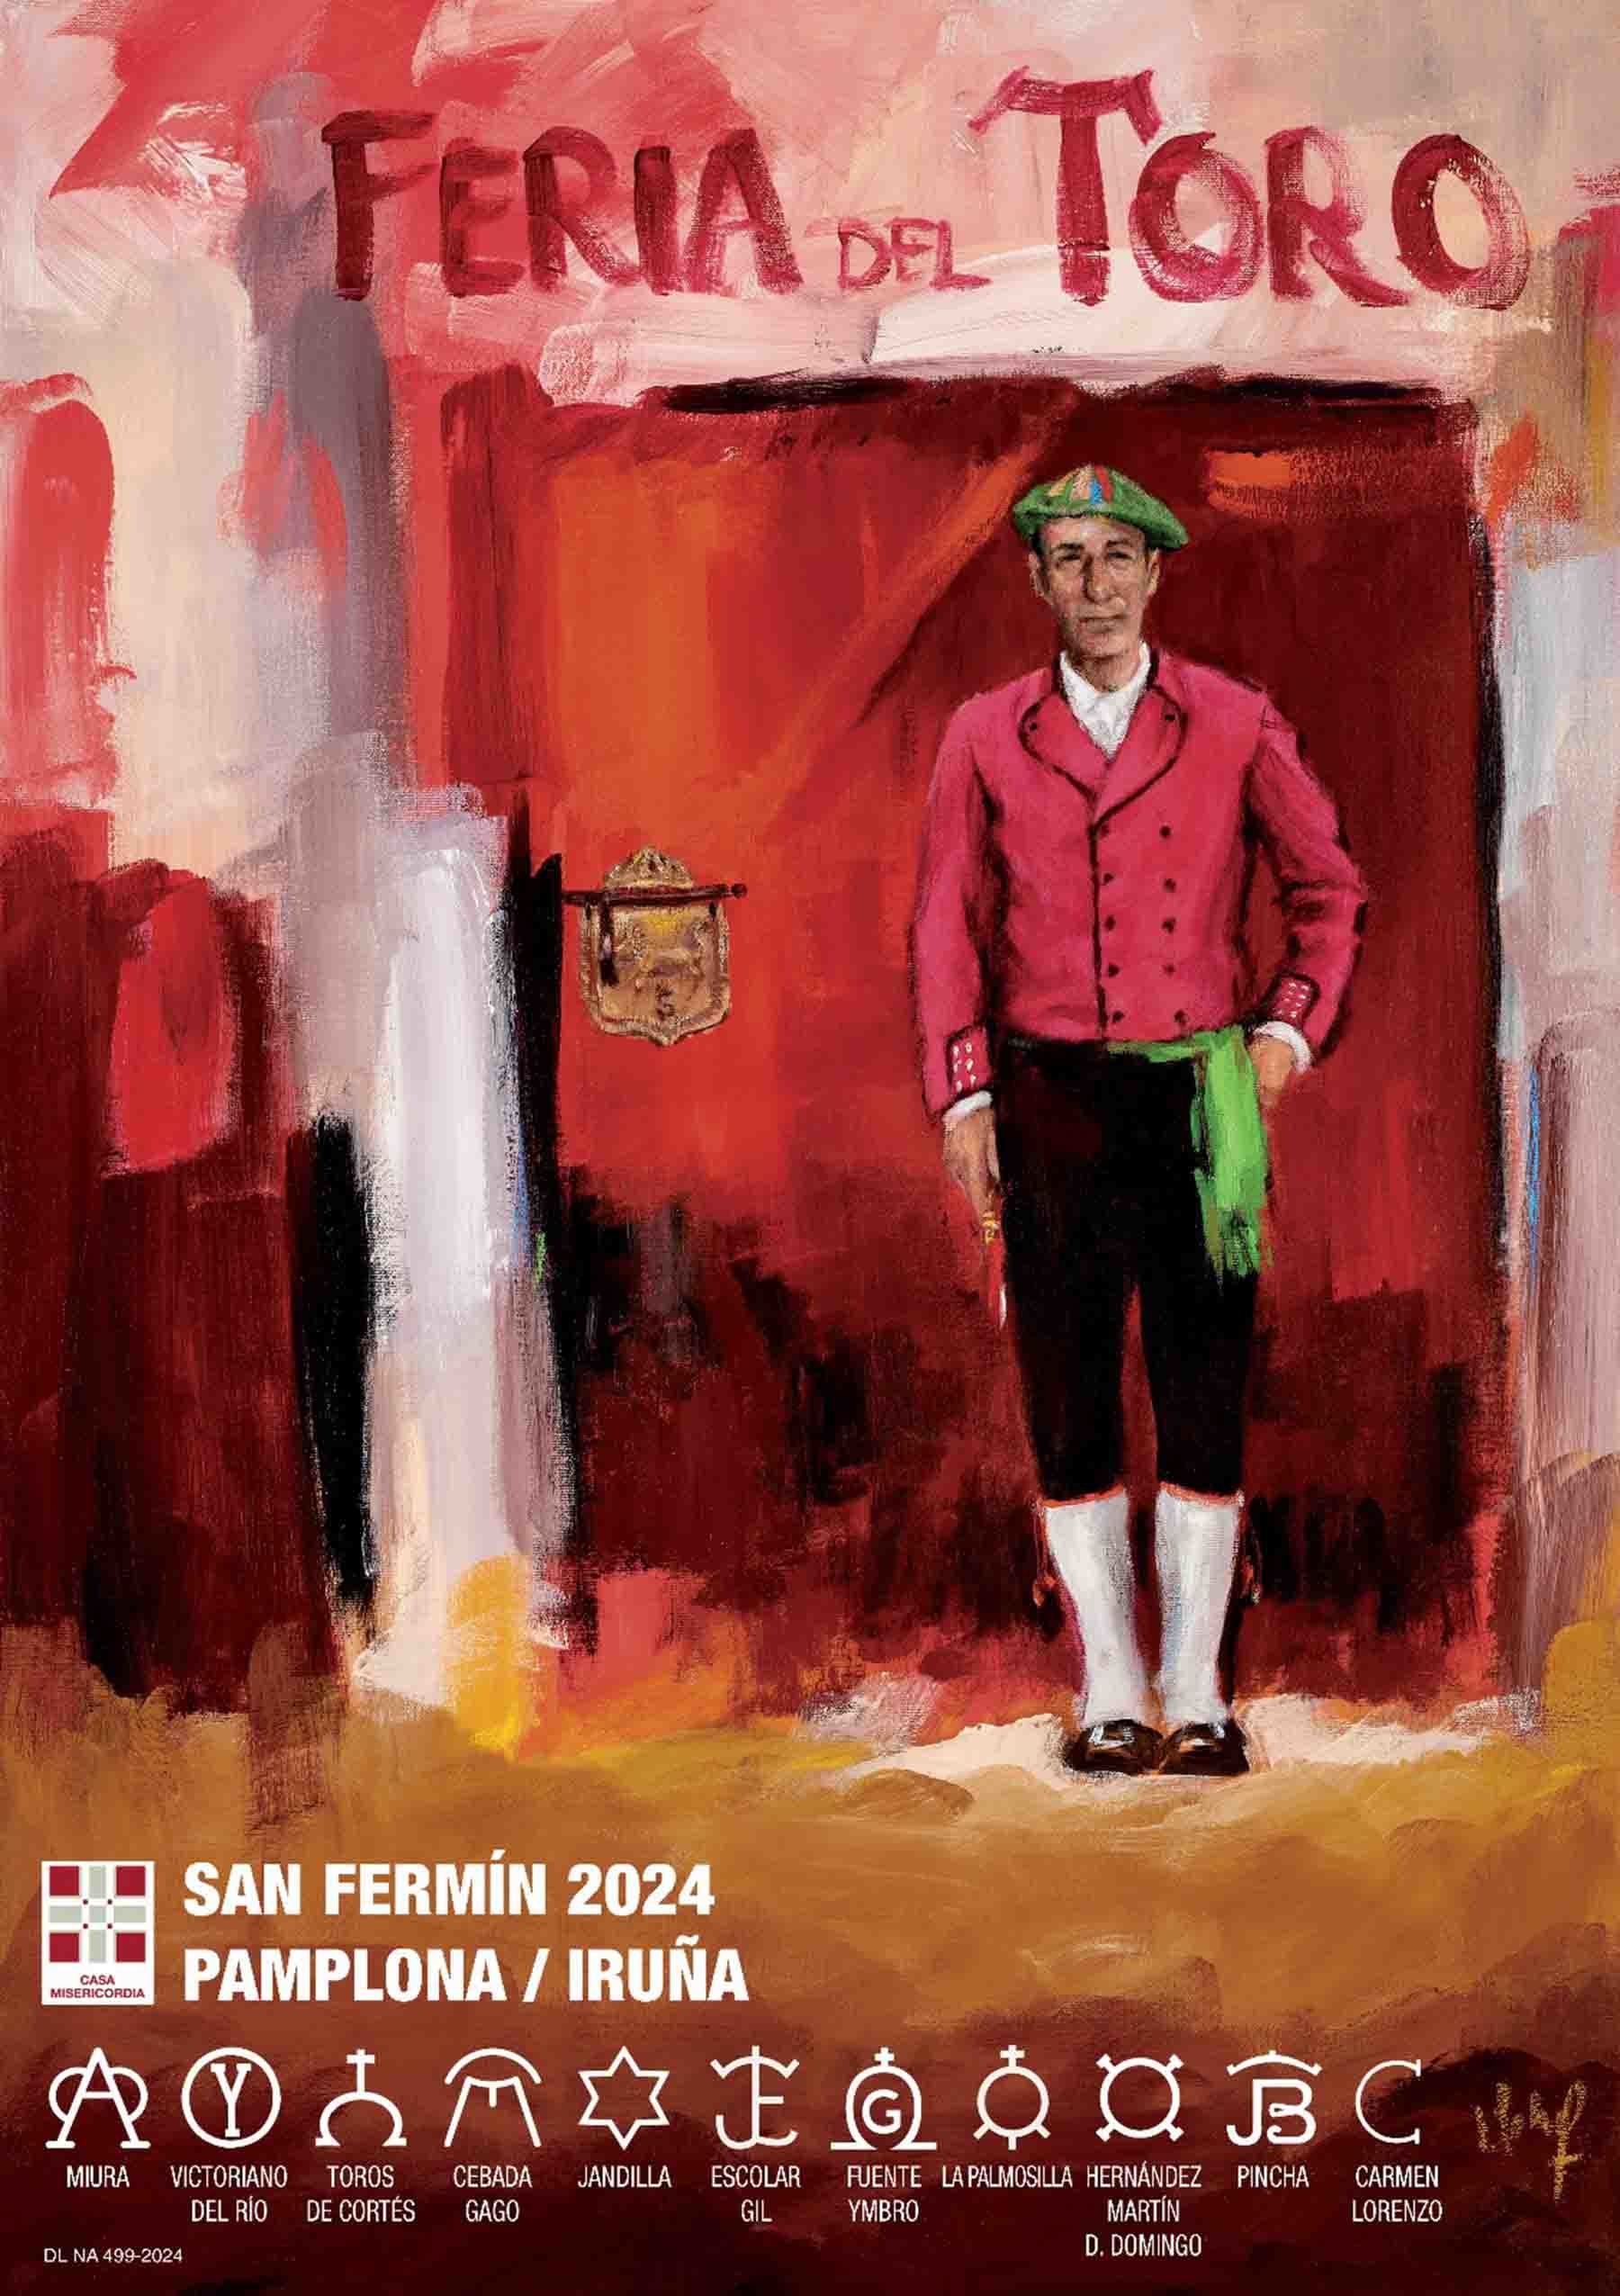 Cartel anunciador de la Feria del Toro de San Fermín 2024 en Pamplona obra del autor Indalecio Sobrino Junco.